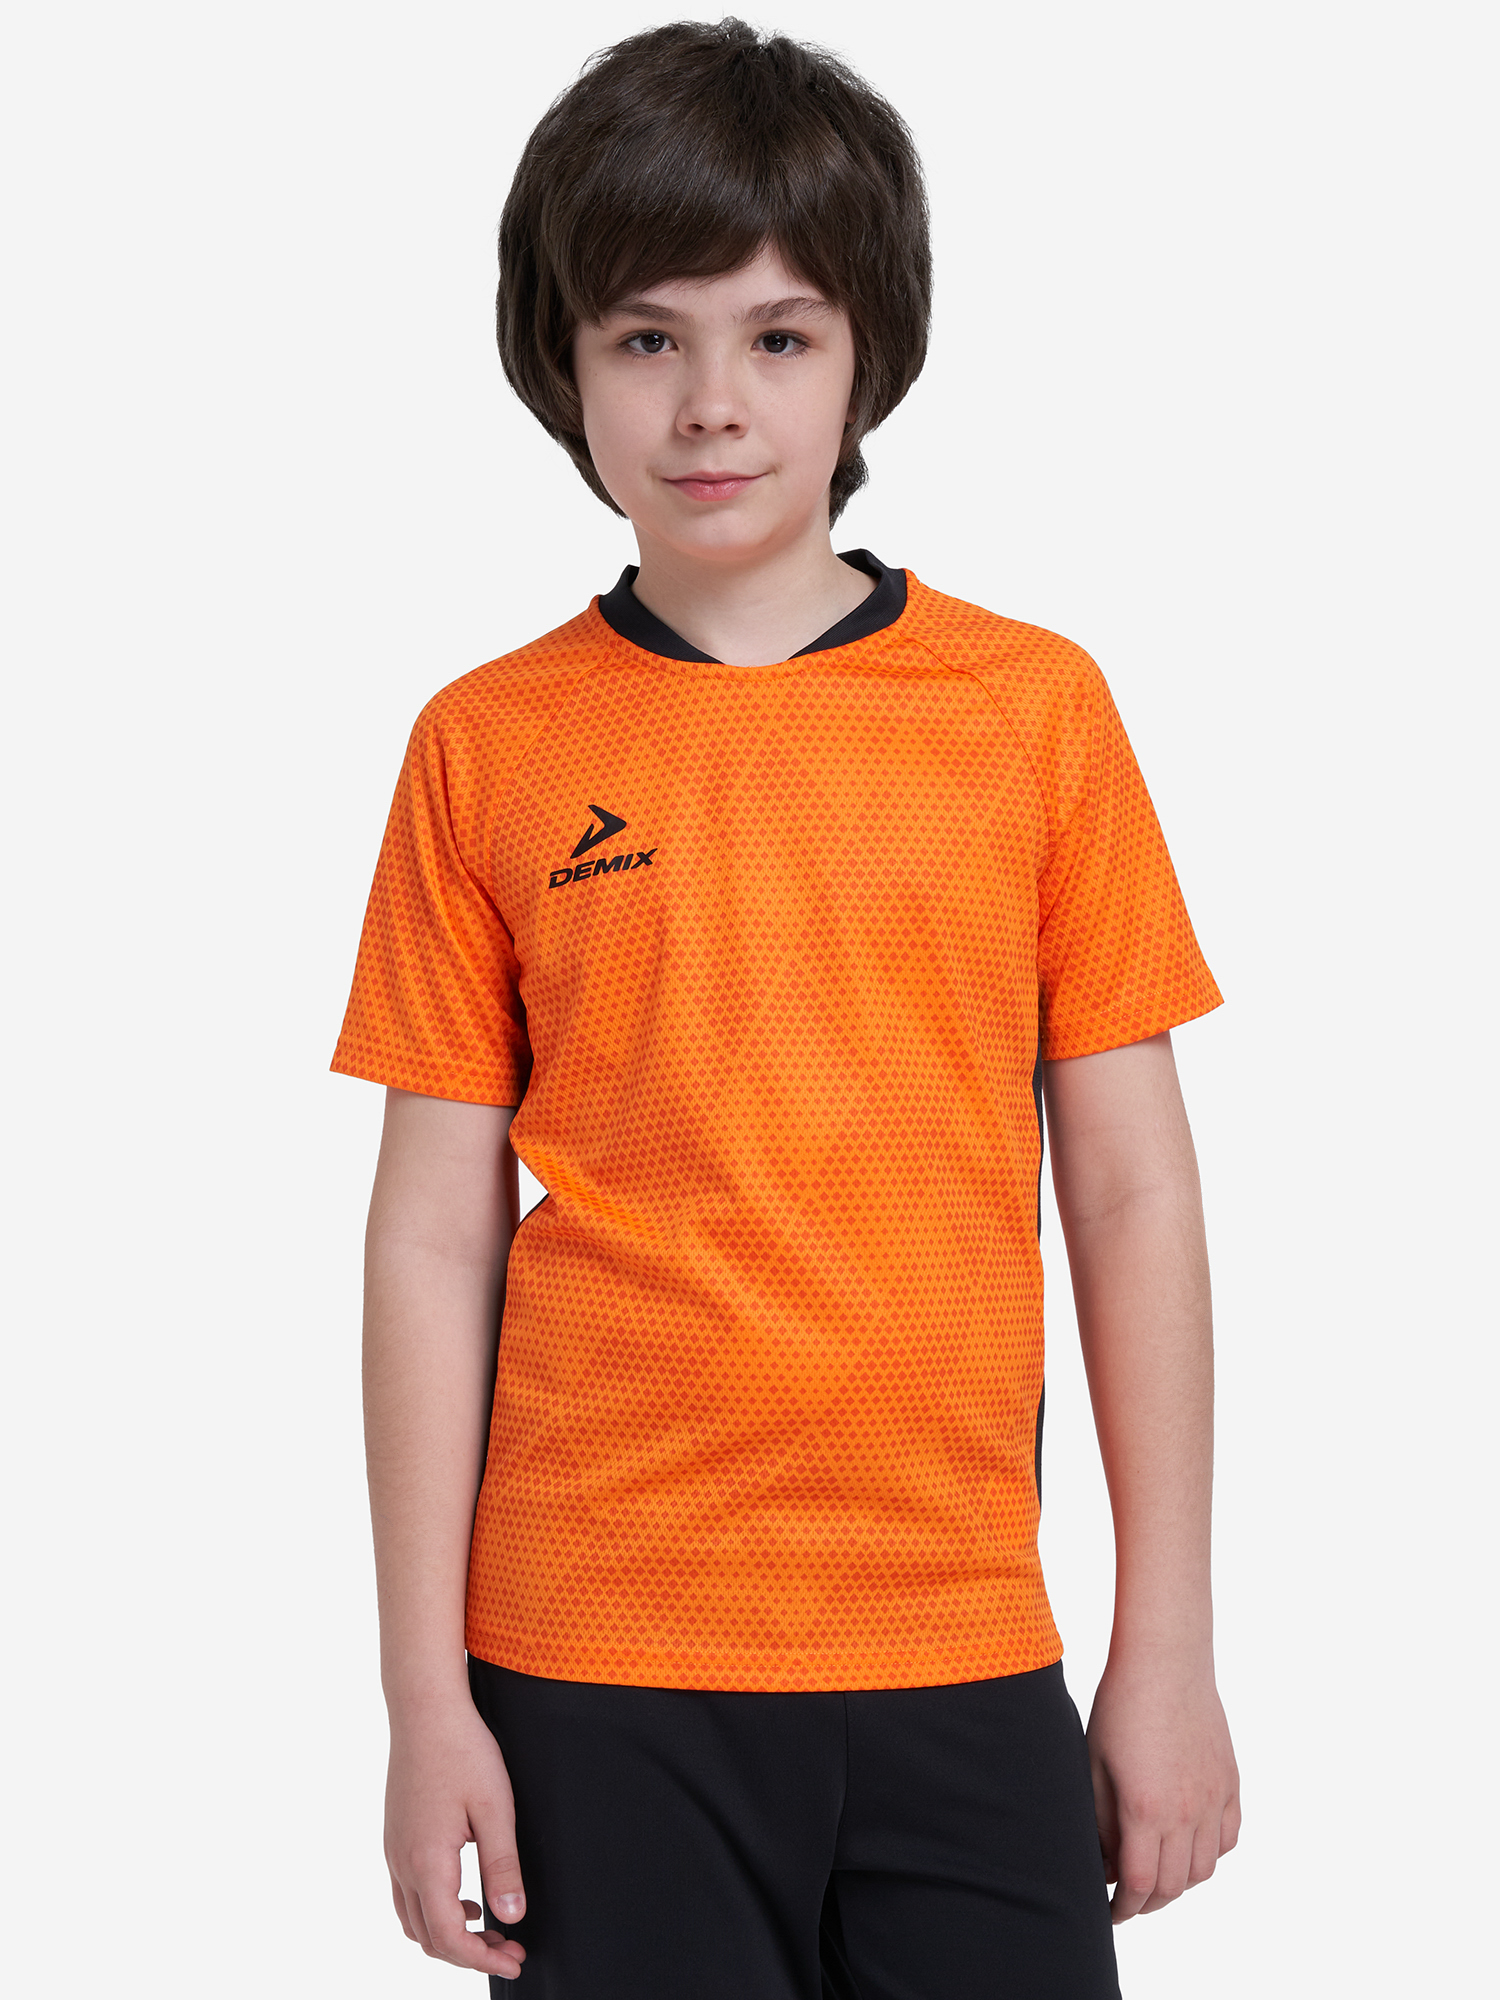 Футболка для мальчиков Demix Strike, Оранжевый футболка для мальчиков demix оранжевый